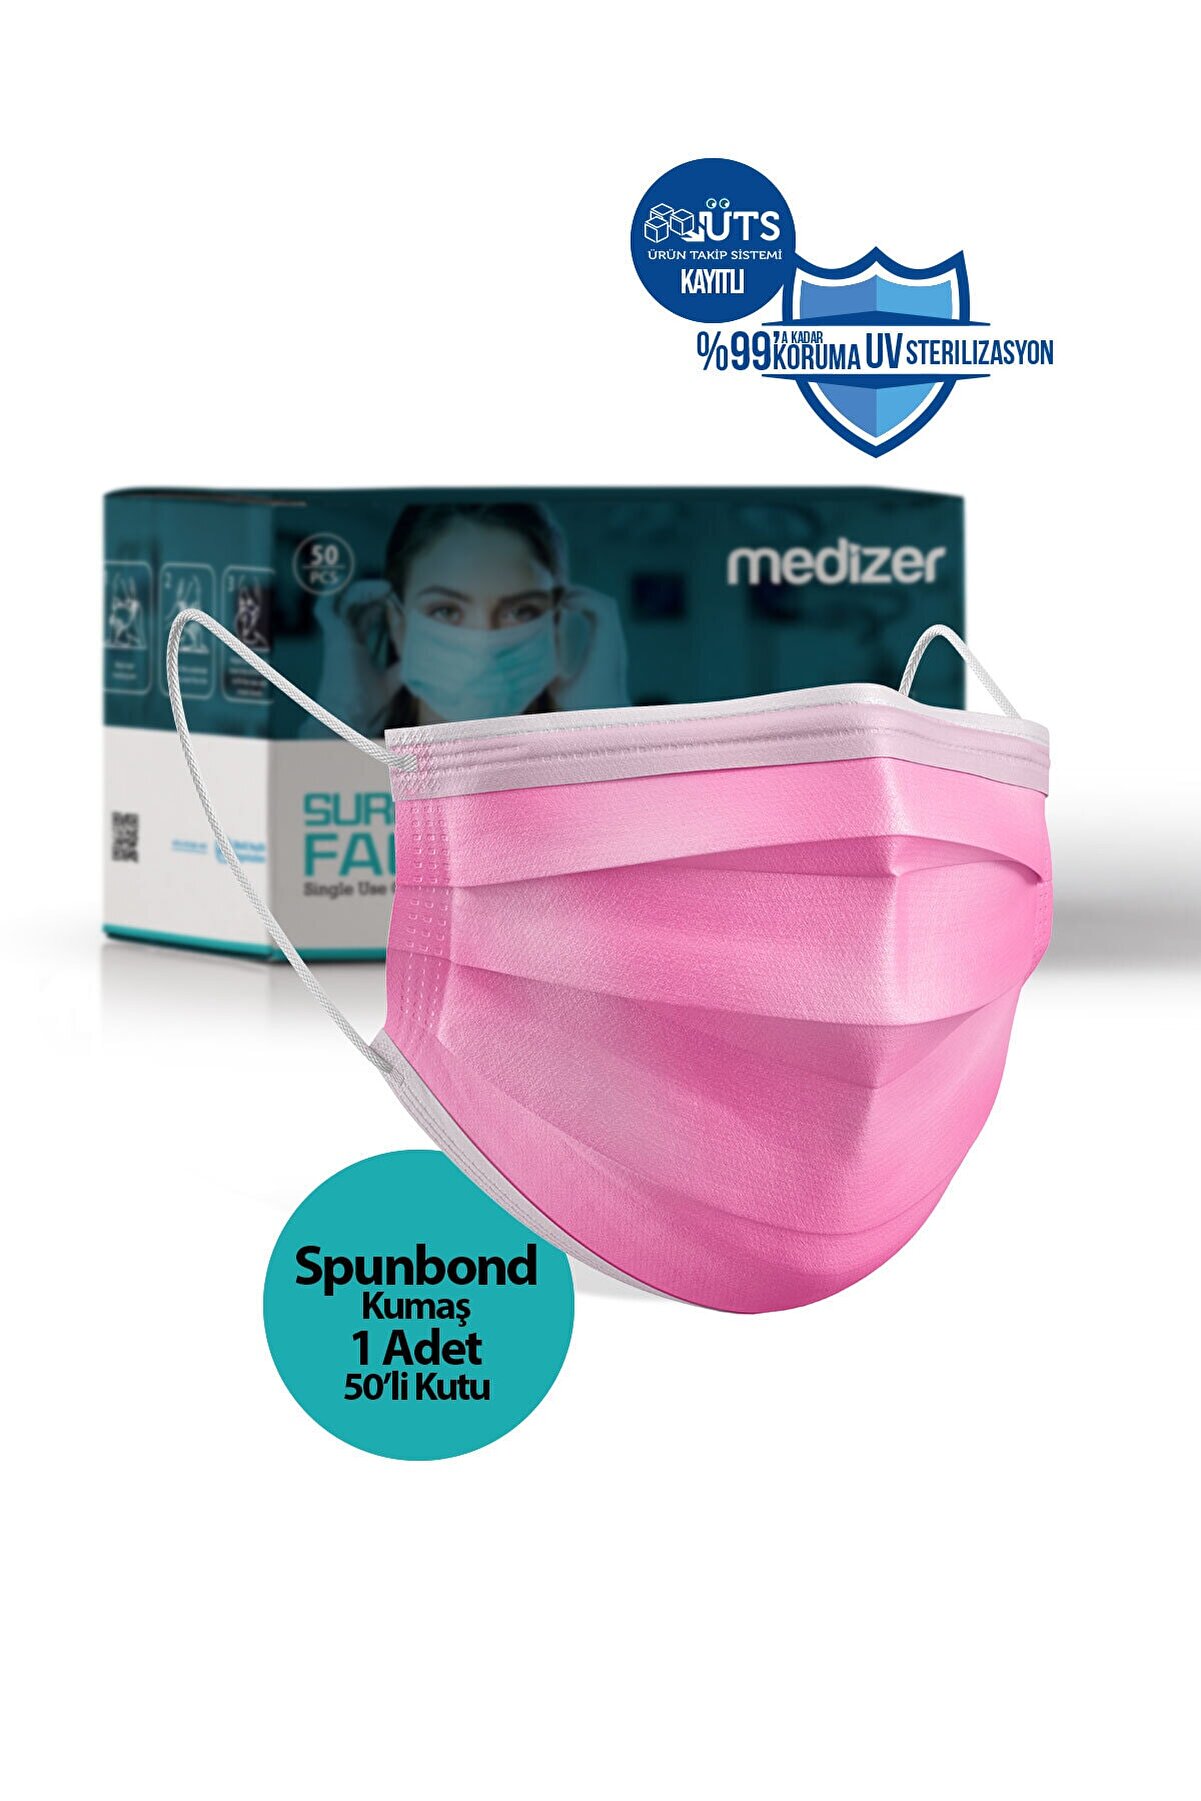 Sabomar Medizer Full Ultrasonik Cerrahi Ağız Maskesi 3 Katlı Spunbond Kumaş 50 Adet - Burun Telli - Pembe